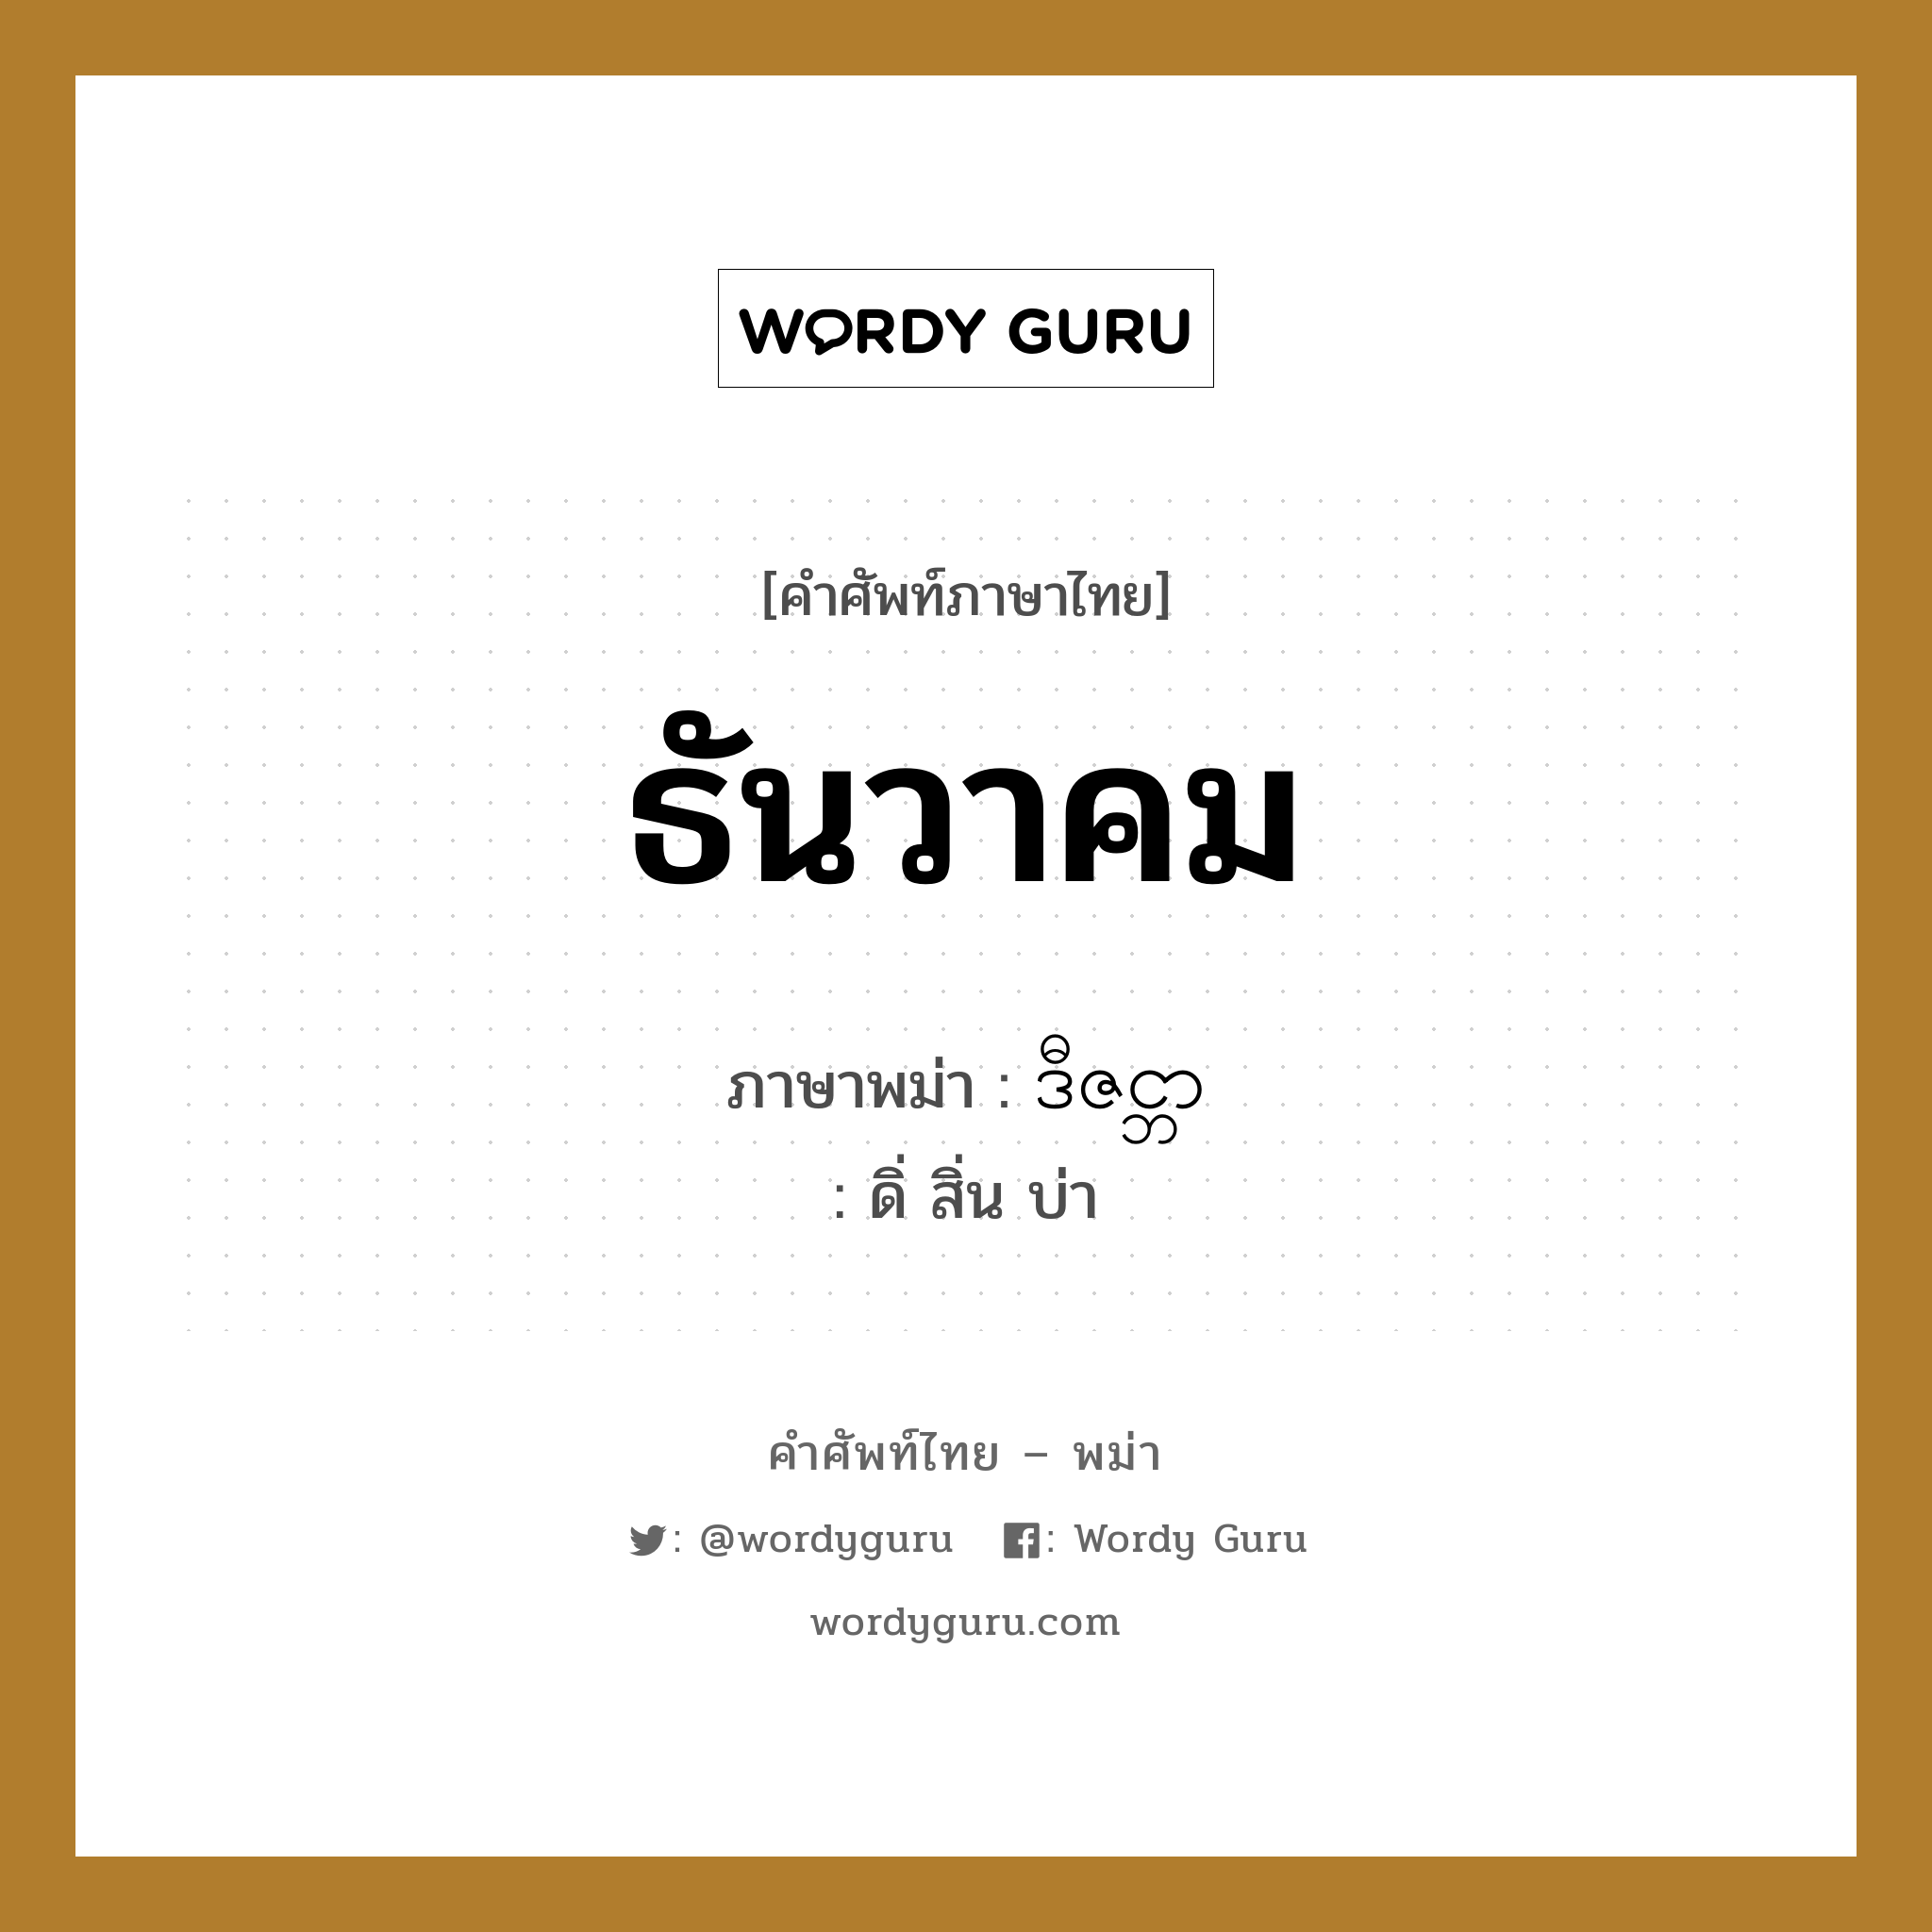 ธันวาคม ภาษาพม่าคืออะไร, คำศัพท์ภาษาไทย - พม่า ธันวาคม ภาษาพม่า ဒီဇင္ဘာ หมวด หมวดวัน เดือน ปี ดิ่ สิ่น บ่า หมวด หมวดวัน เดือน ปี